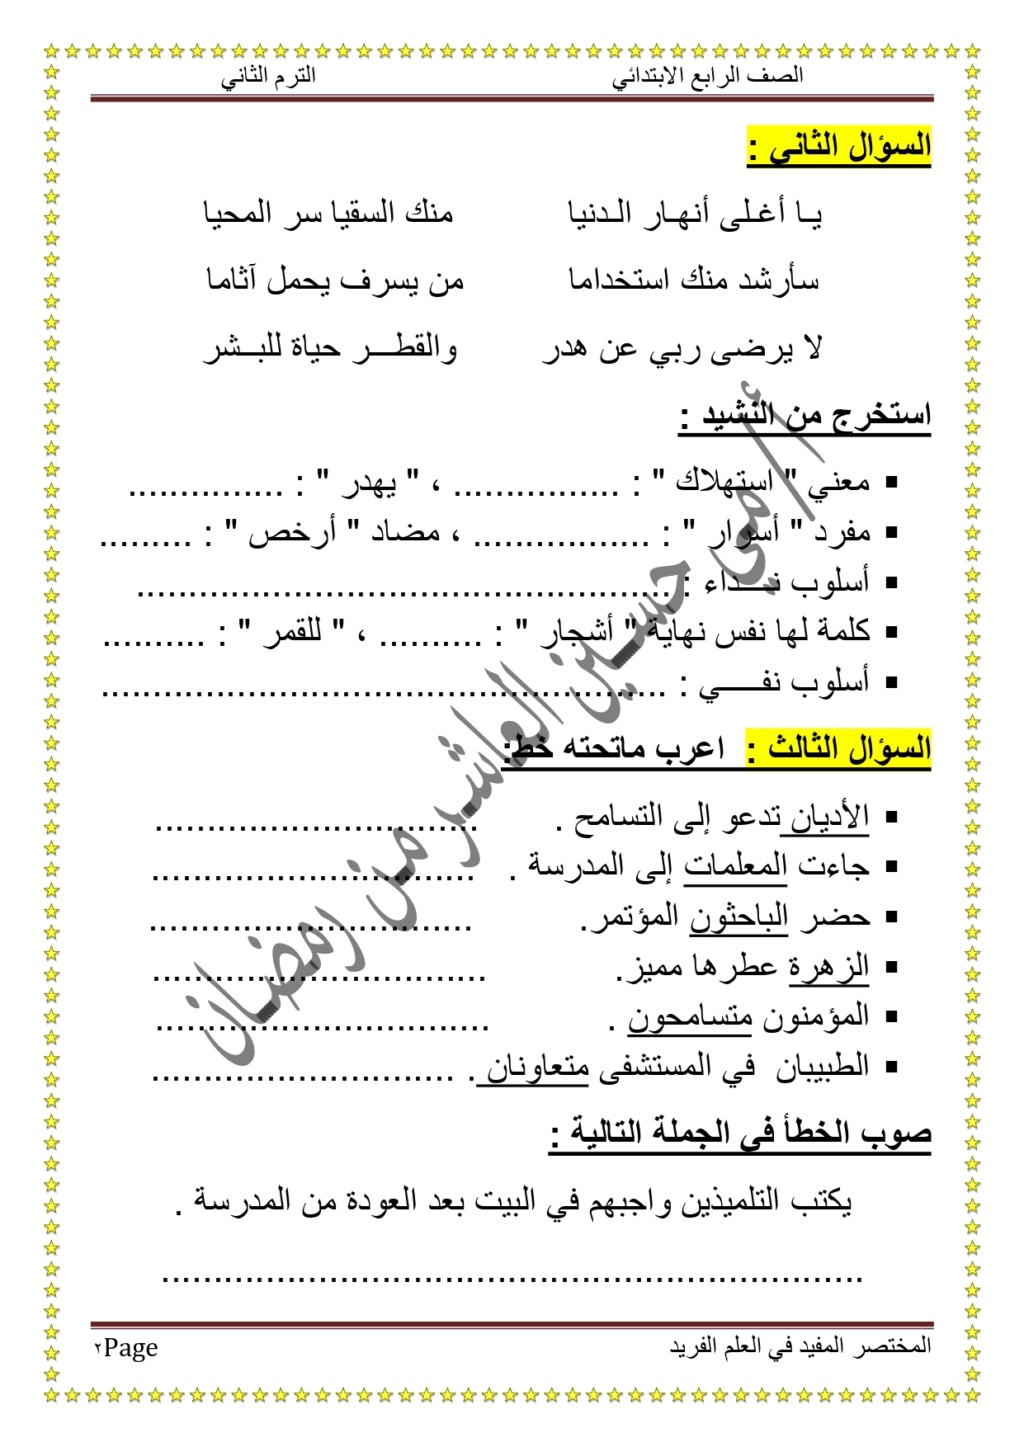  قياس مستوى لغة عربية رابعة ابتدائي ترم ثاني الموضوع الأول المحور الثالث 1714